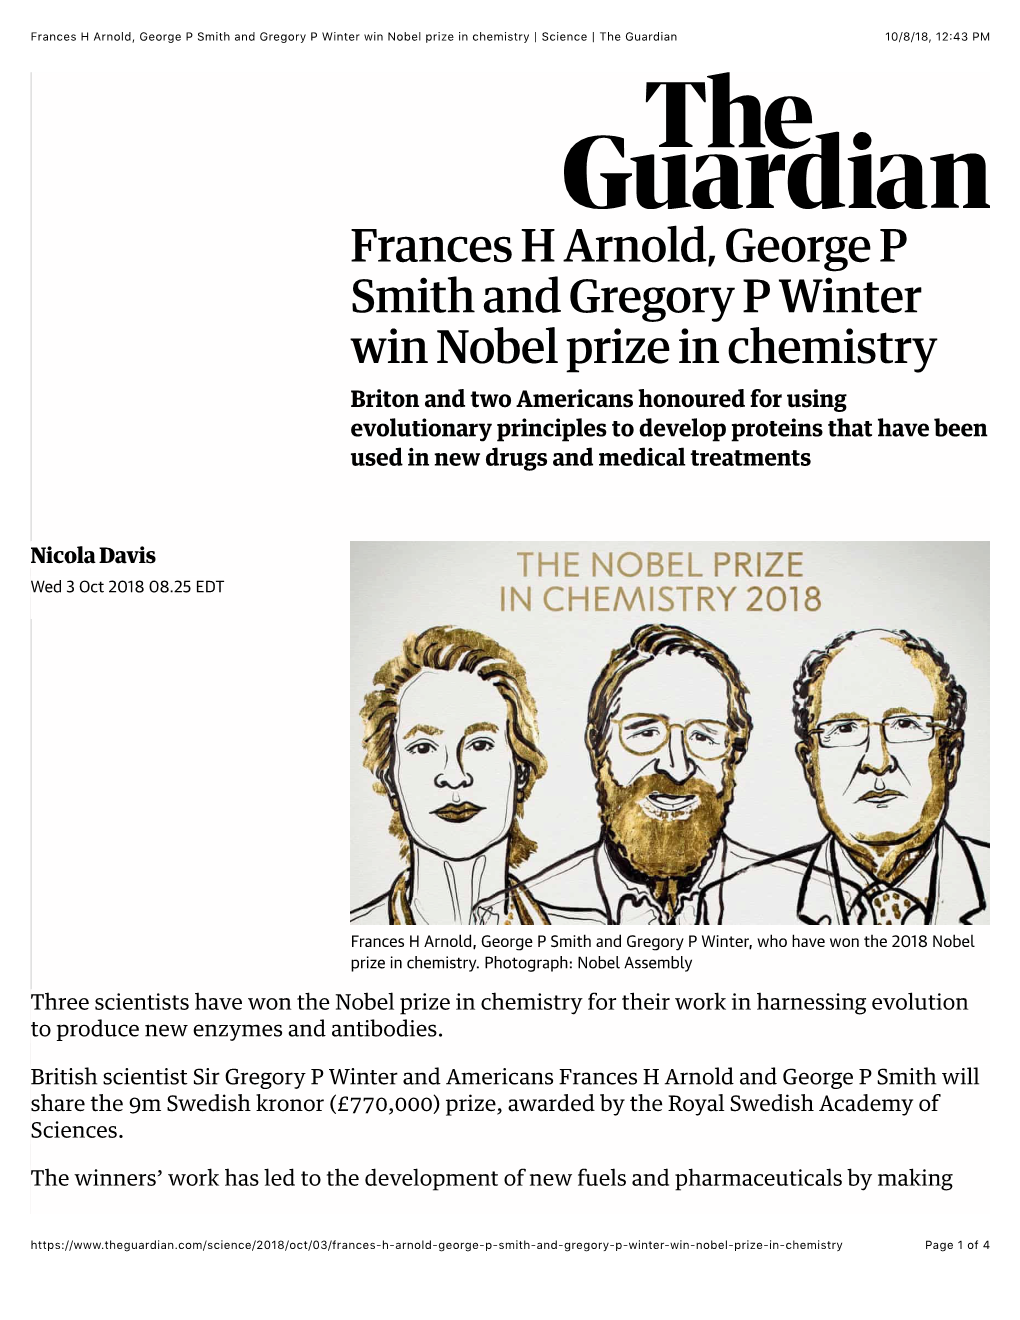 Frances H Arnold, Nobel Prize in Chemistry | Science